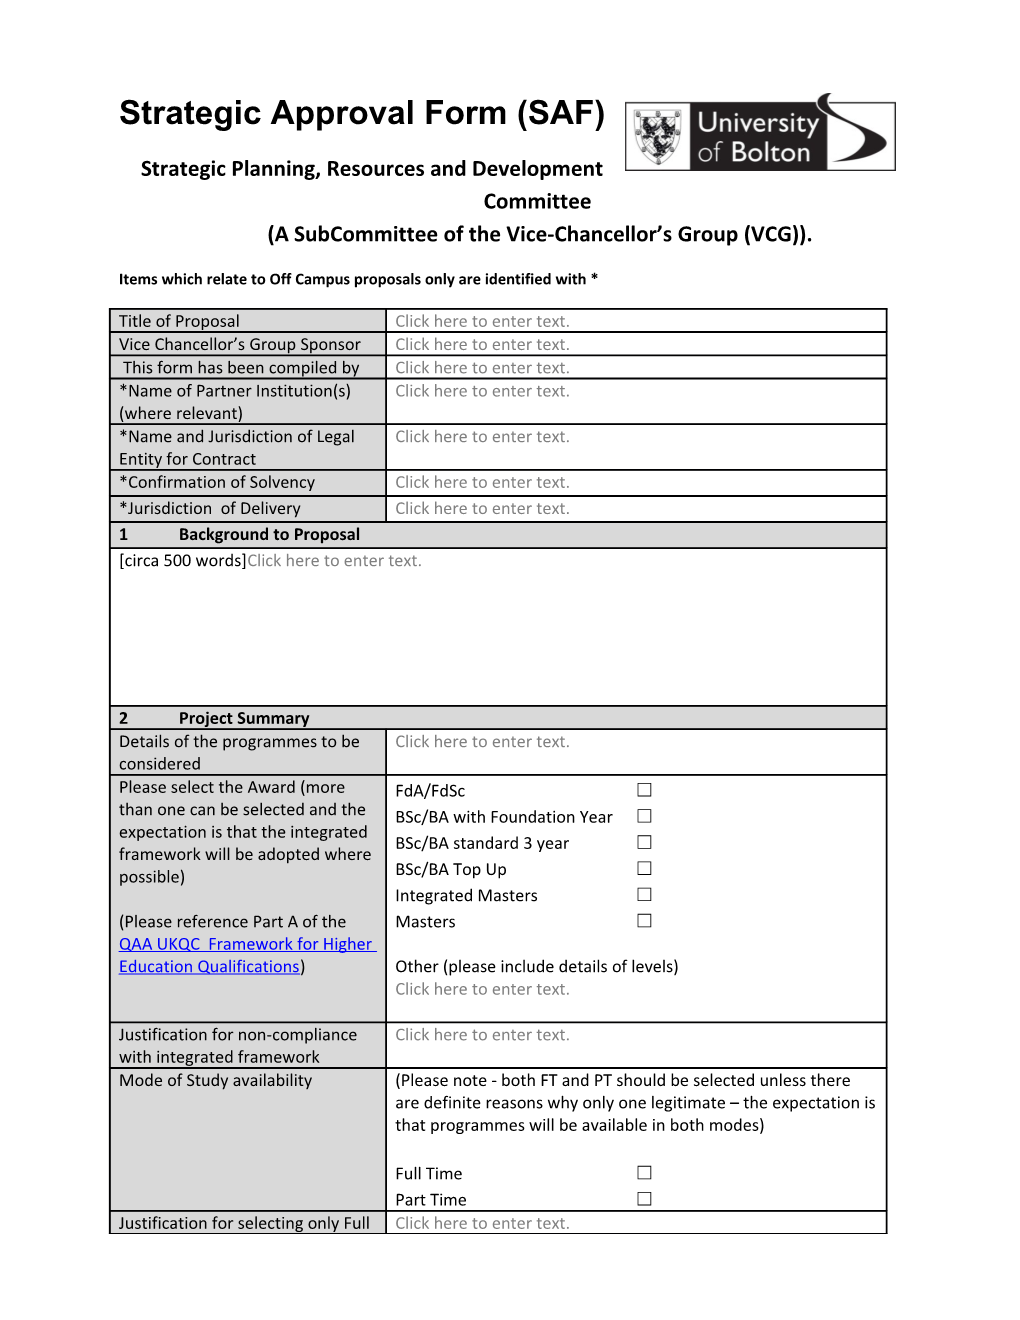 Strategic-Approval-Form-SAF September 2016